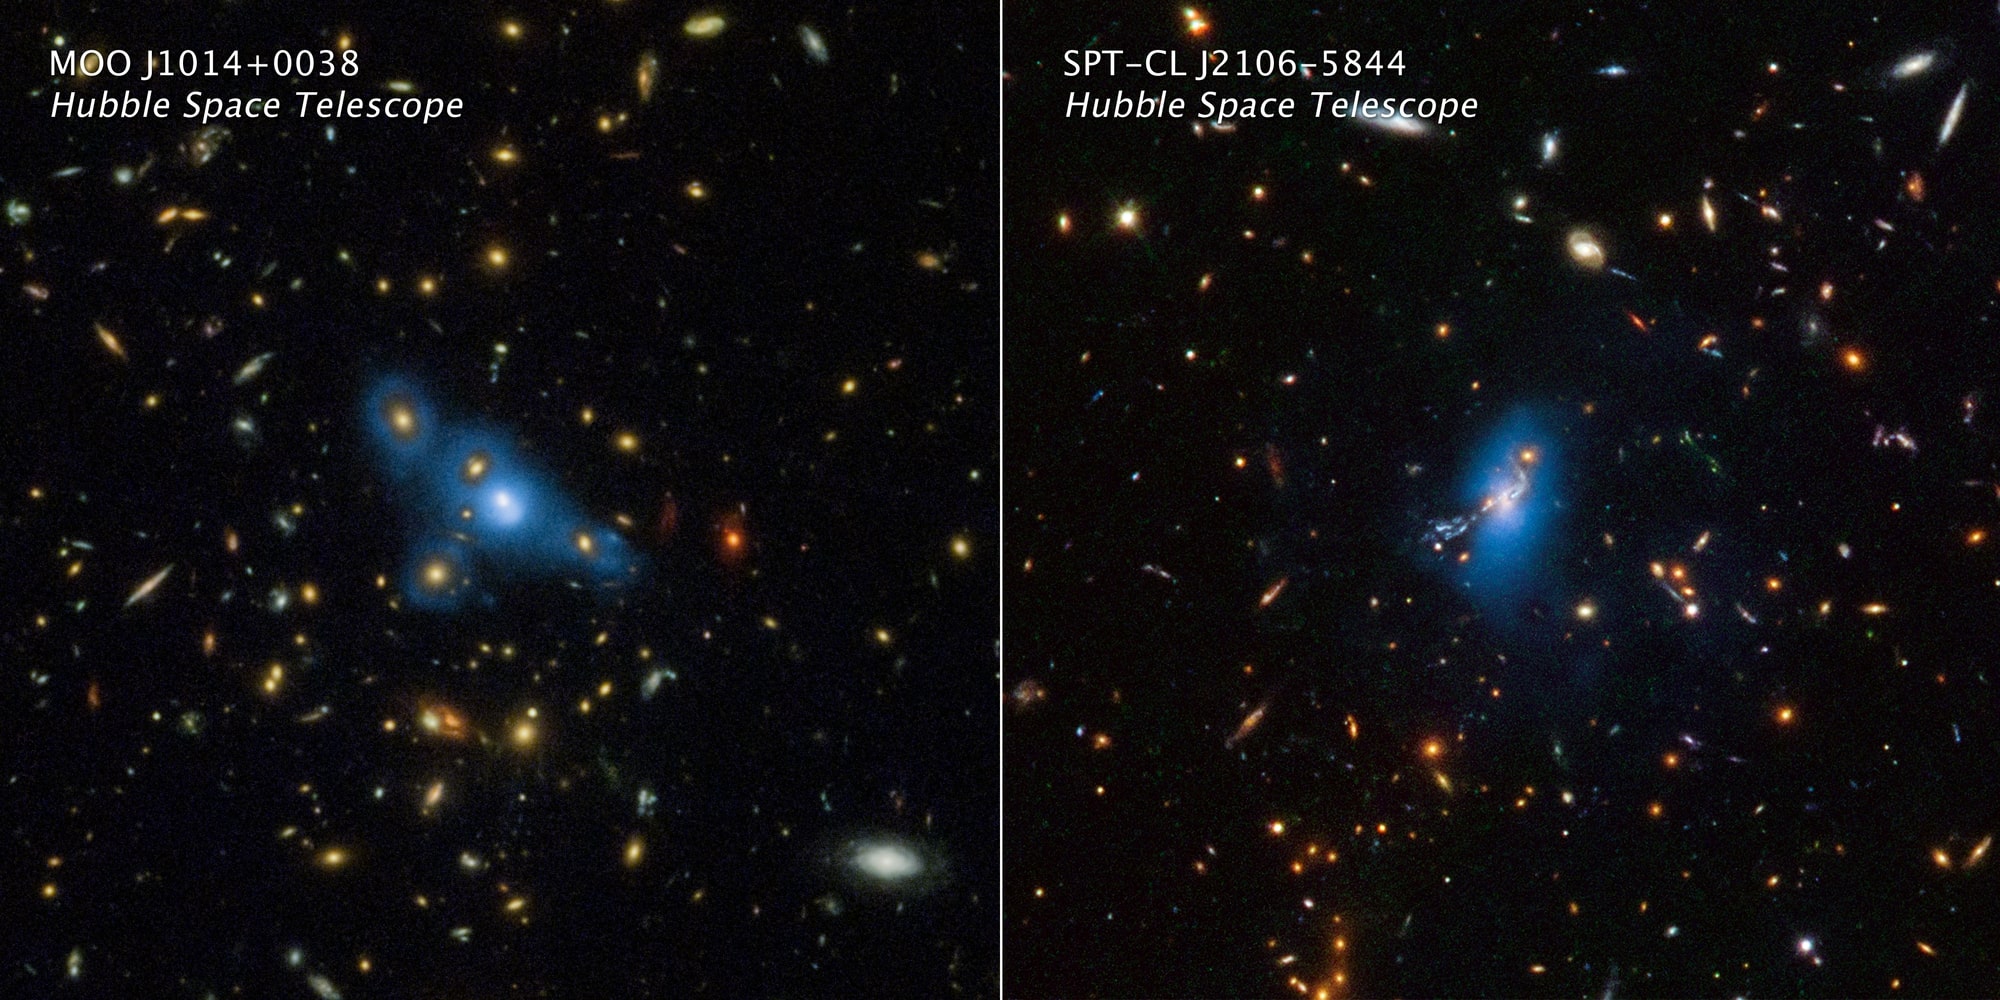 Dies sind Bilder des Hubble-Weltraumteleskops von zwei massiven Galaxienhaufen namens MOO J1014+0038 (links) und SPT-CL J2106-5844 (rechts).  Die künstlich hinzugefügte blaue Farbe wird aus Hubble-Daten übersetzt, die ein Phänomen namens Intracluster-Licht erfassten.  Dieses extrem schwache Leuchten zeichnet eine gleichmäßige Lichtverteilung von wandernden Sternen nach, die über den Haufen verstreut sind.  Vor Milliarden von Jahren wurden die Sterne von ihren Muttergalaxien abgestoßen und driften nun durch den intergalaktischen Raum.